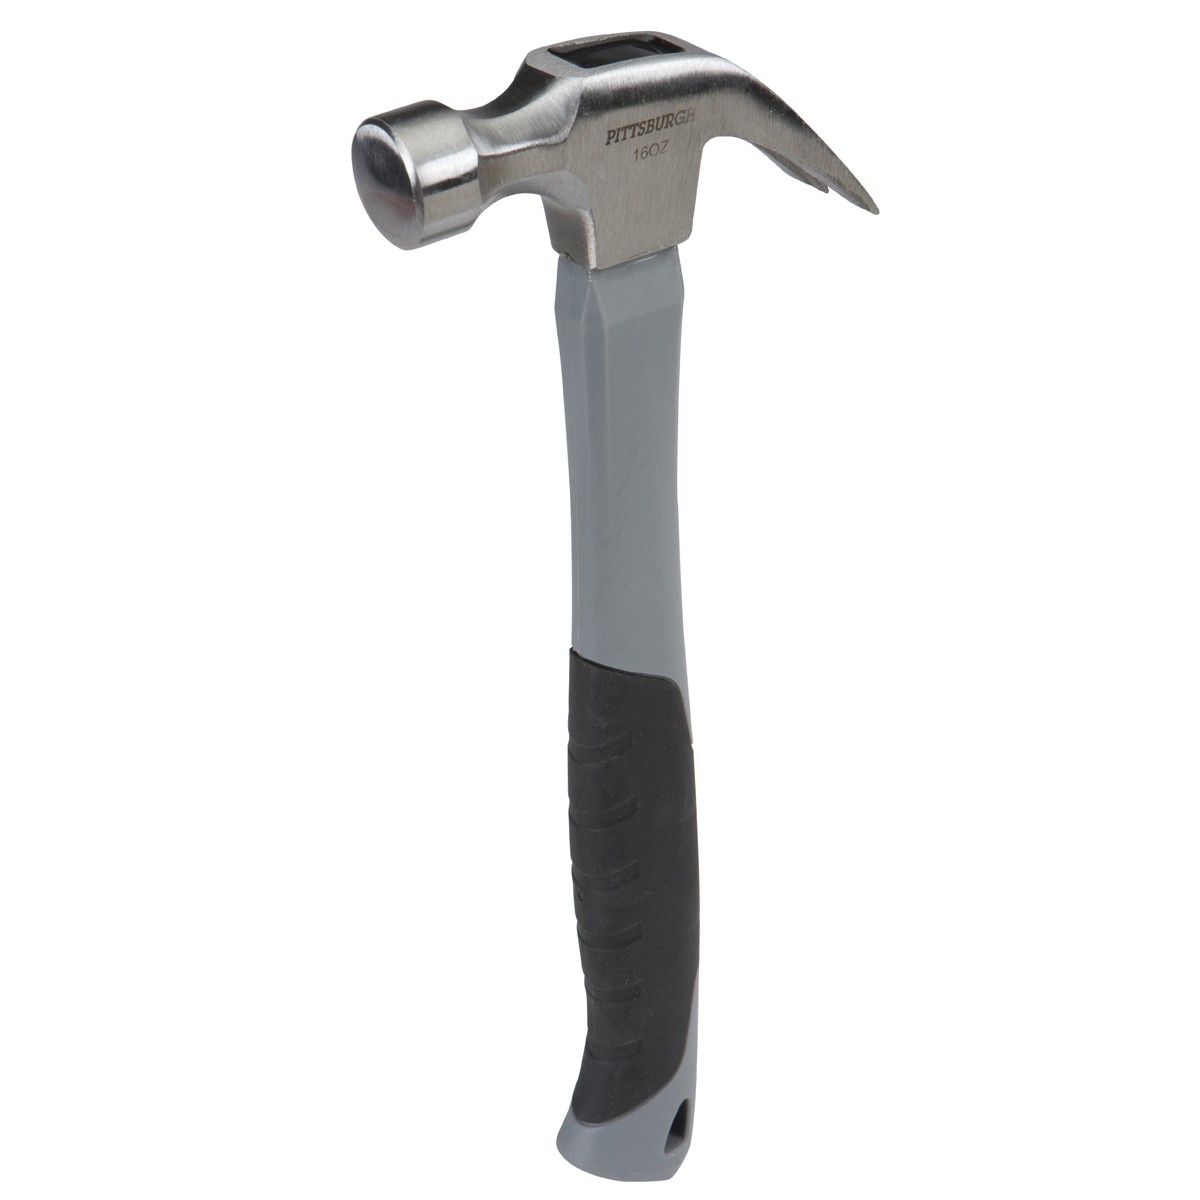 16 oz. Fiberglass Claw Hammer